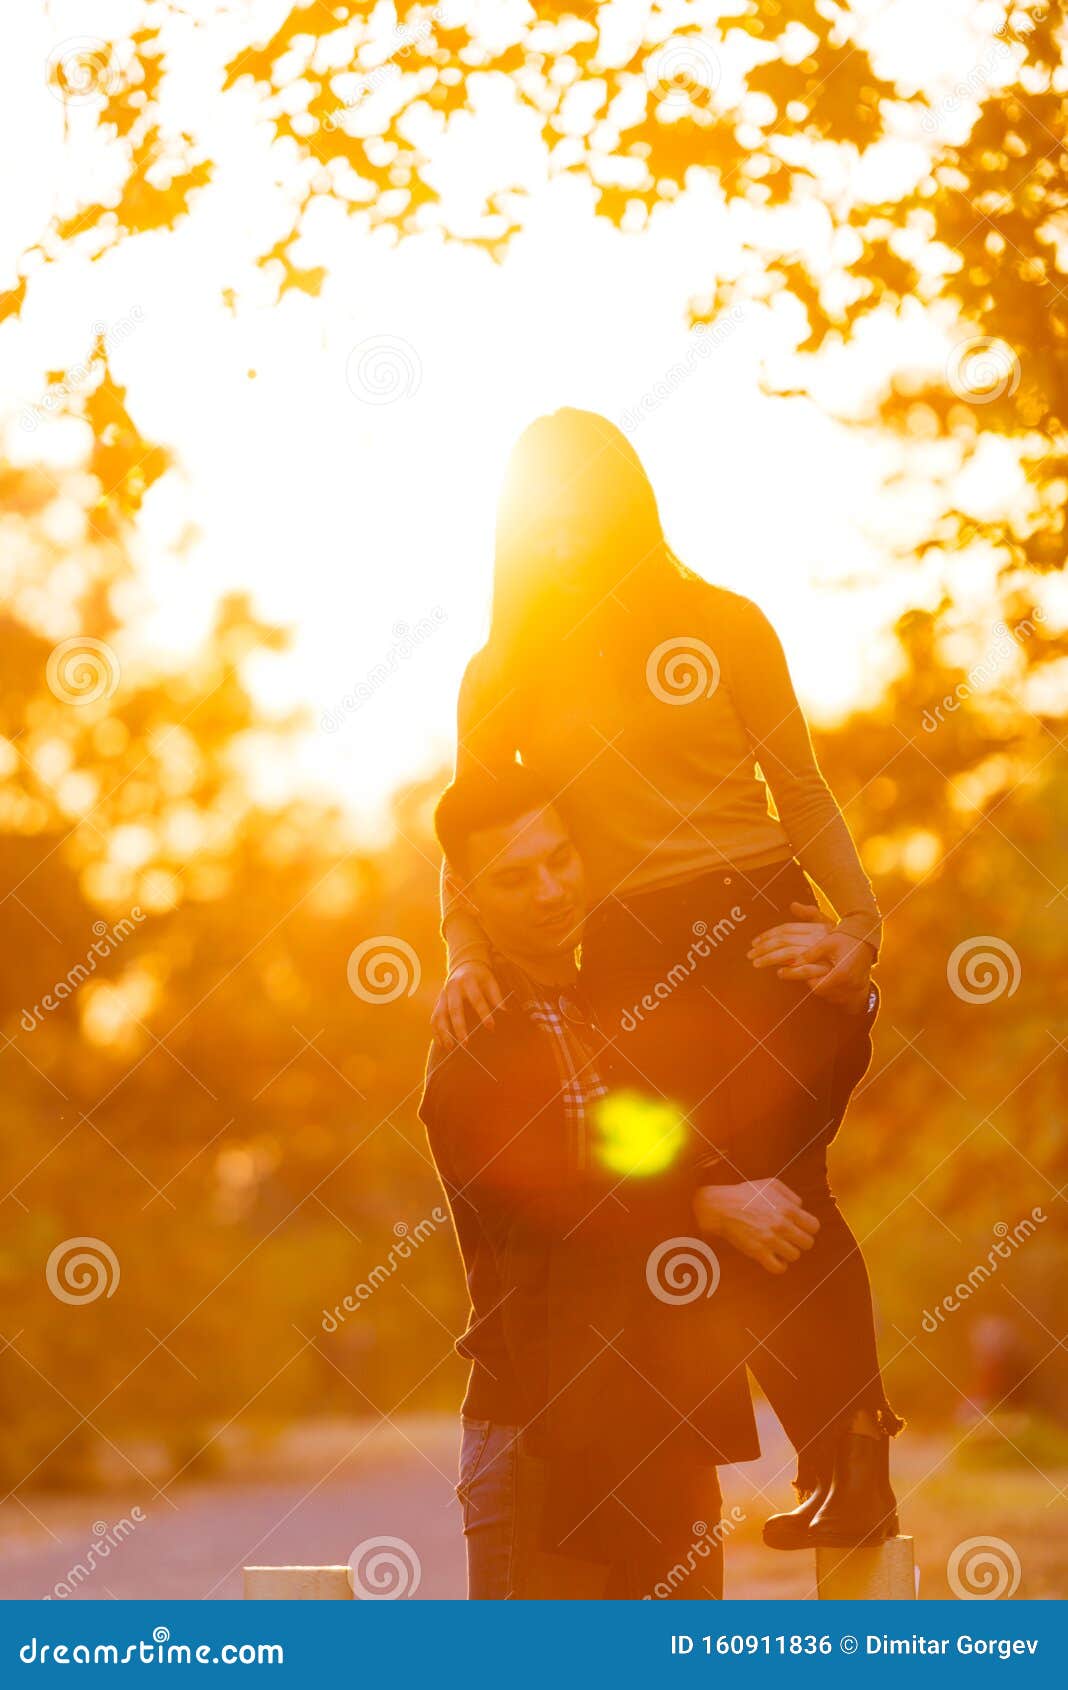 Парень с девушкой обняли друг друга за пояс, вид со спины